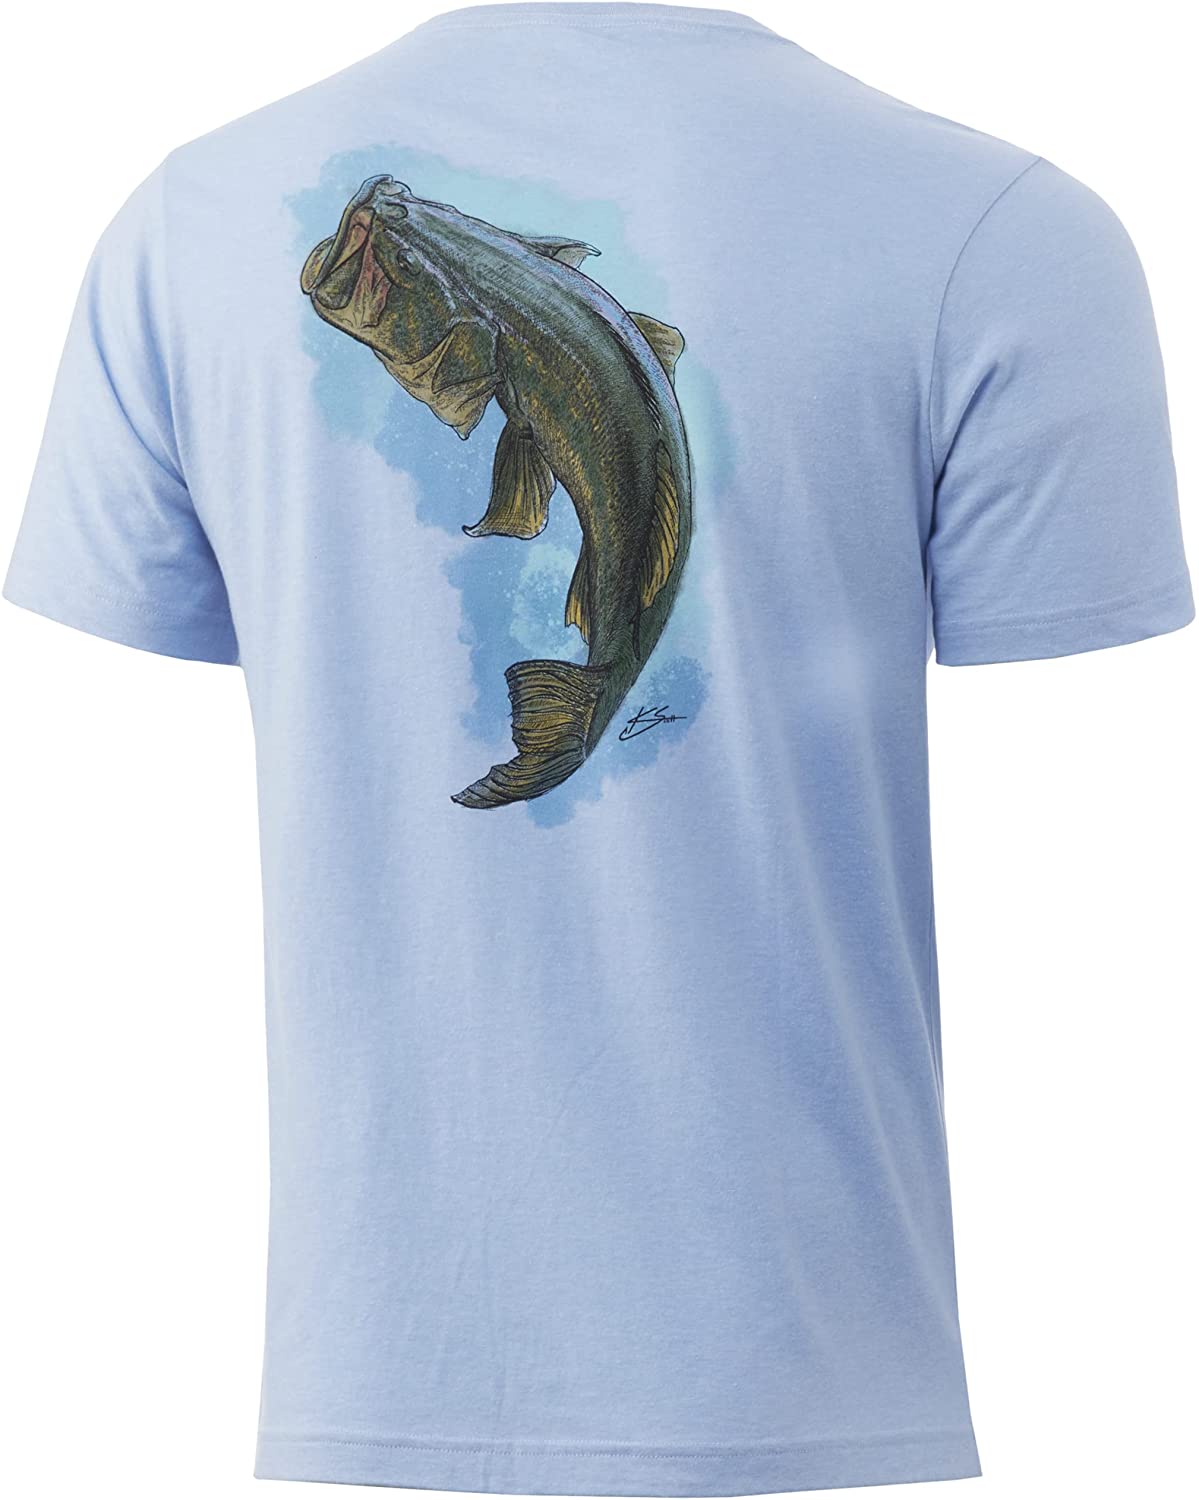 Huk Men's Beach Fishin' Short Sleeve Tee Quick-Dry Performance Fishing Shirt 